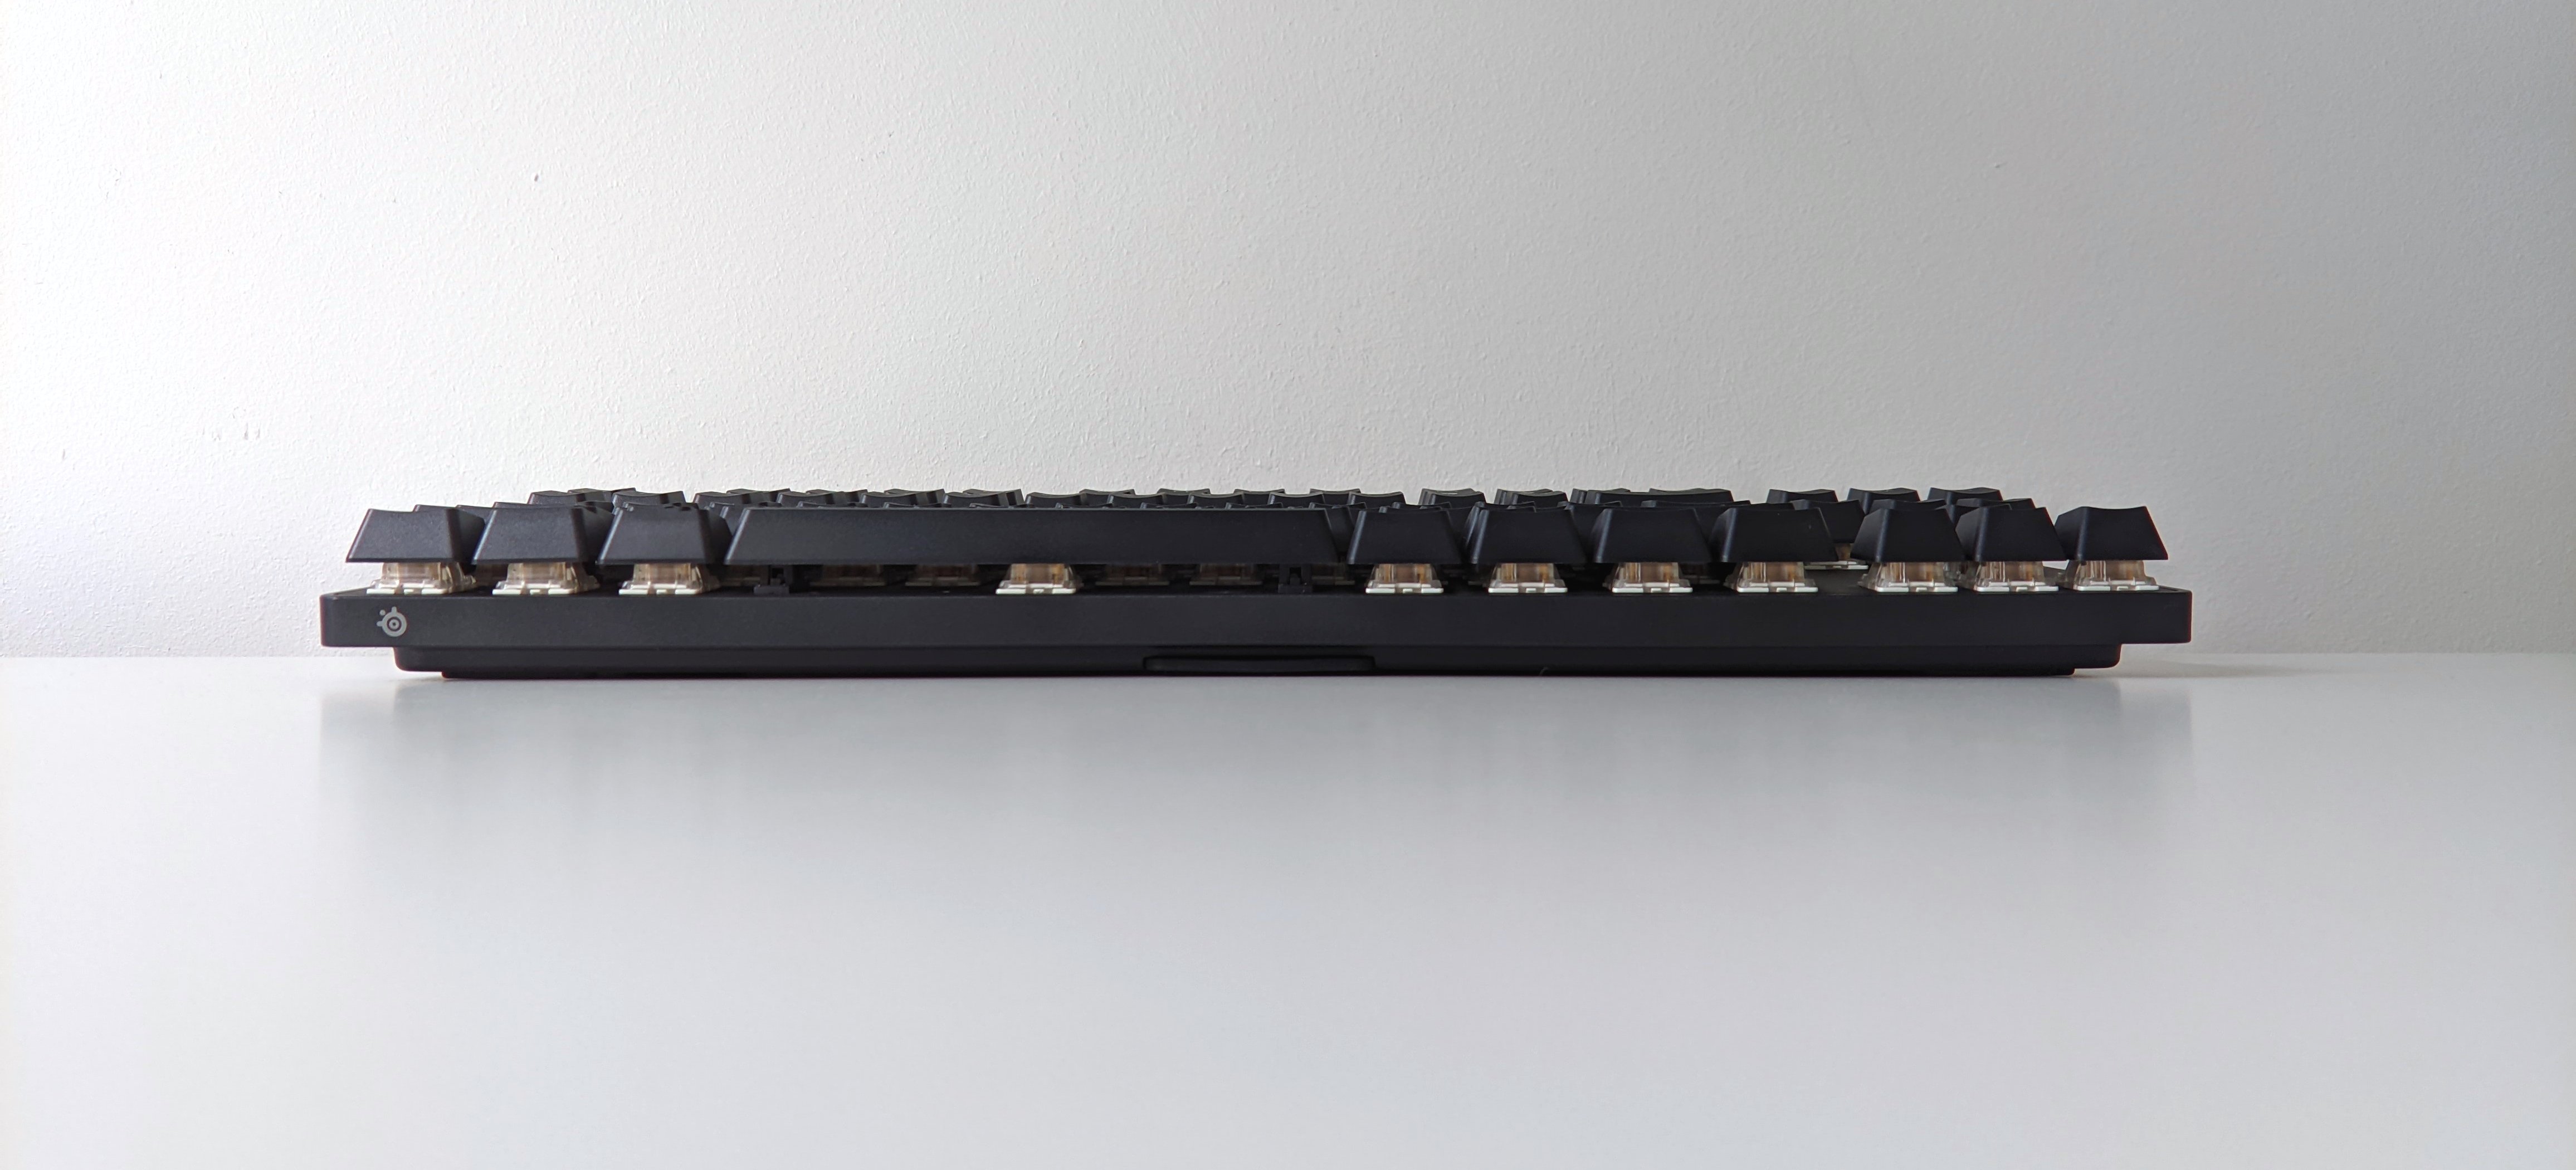 klawiatura SteelSeries Apex 9 TKL keyboard